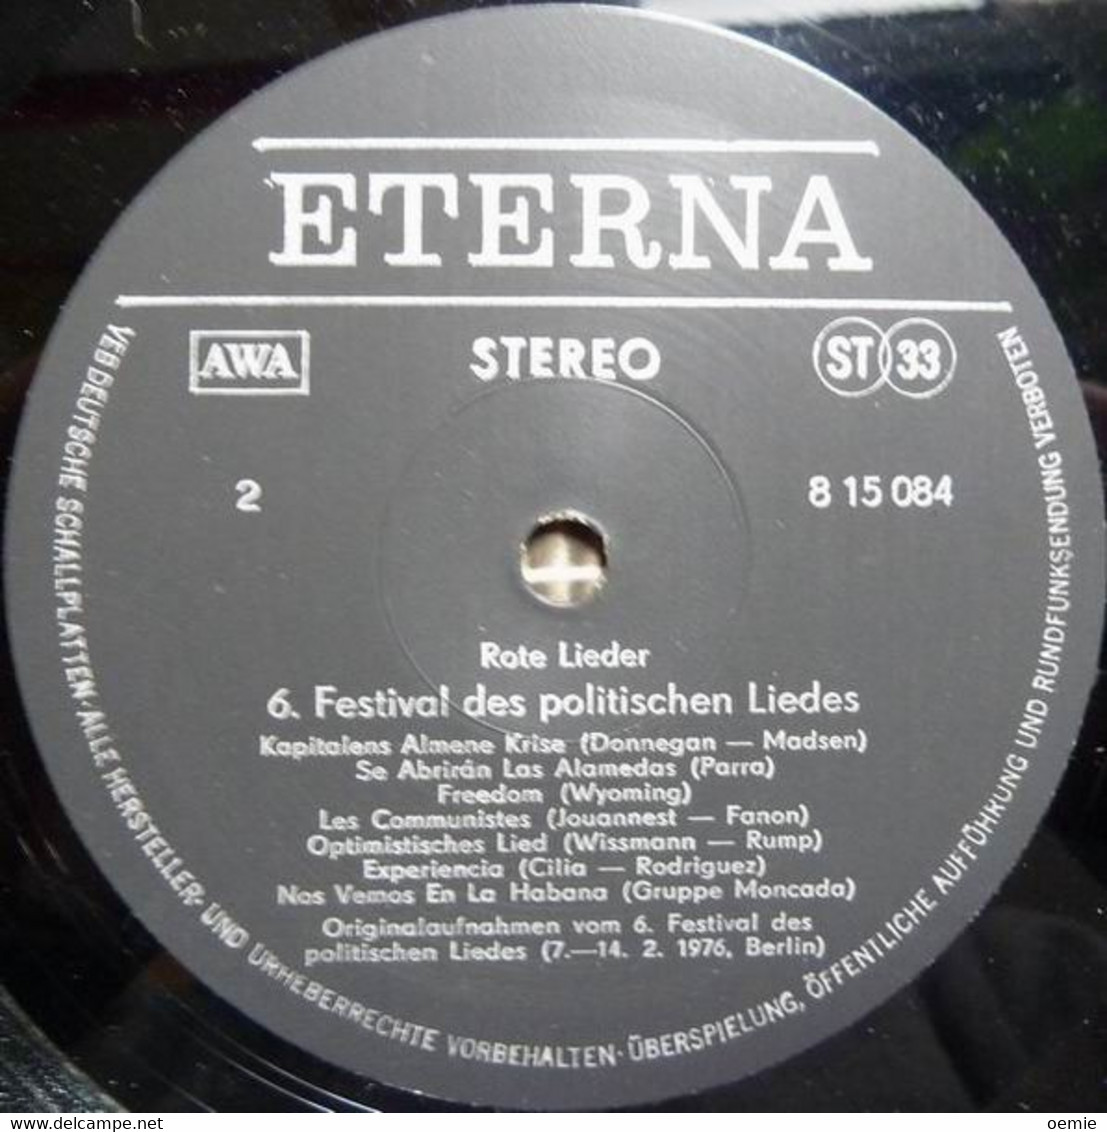 ROTE  LIEDER  °  BERLIN  7 / 14 2 / 1976  °  6 FESTIVAL  DES POLITISCHEN  LIEDES - Autres - Musique Allemande